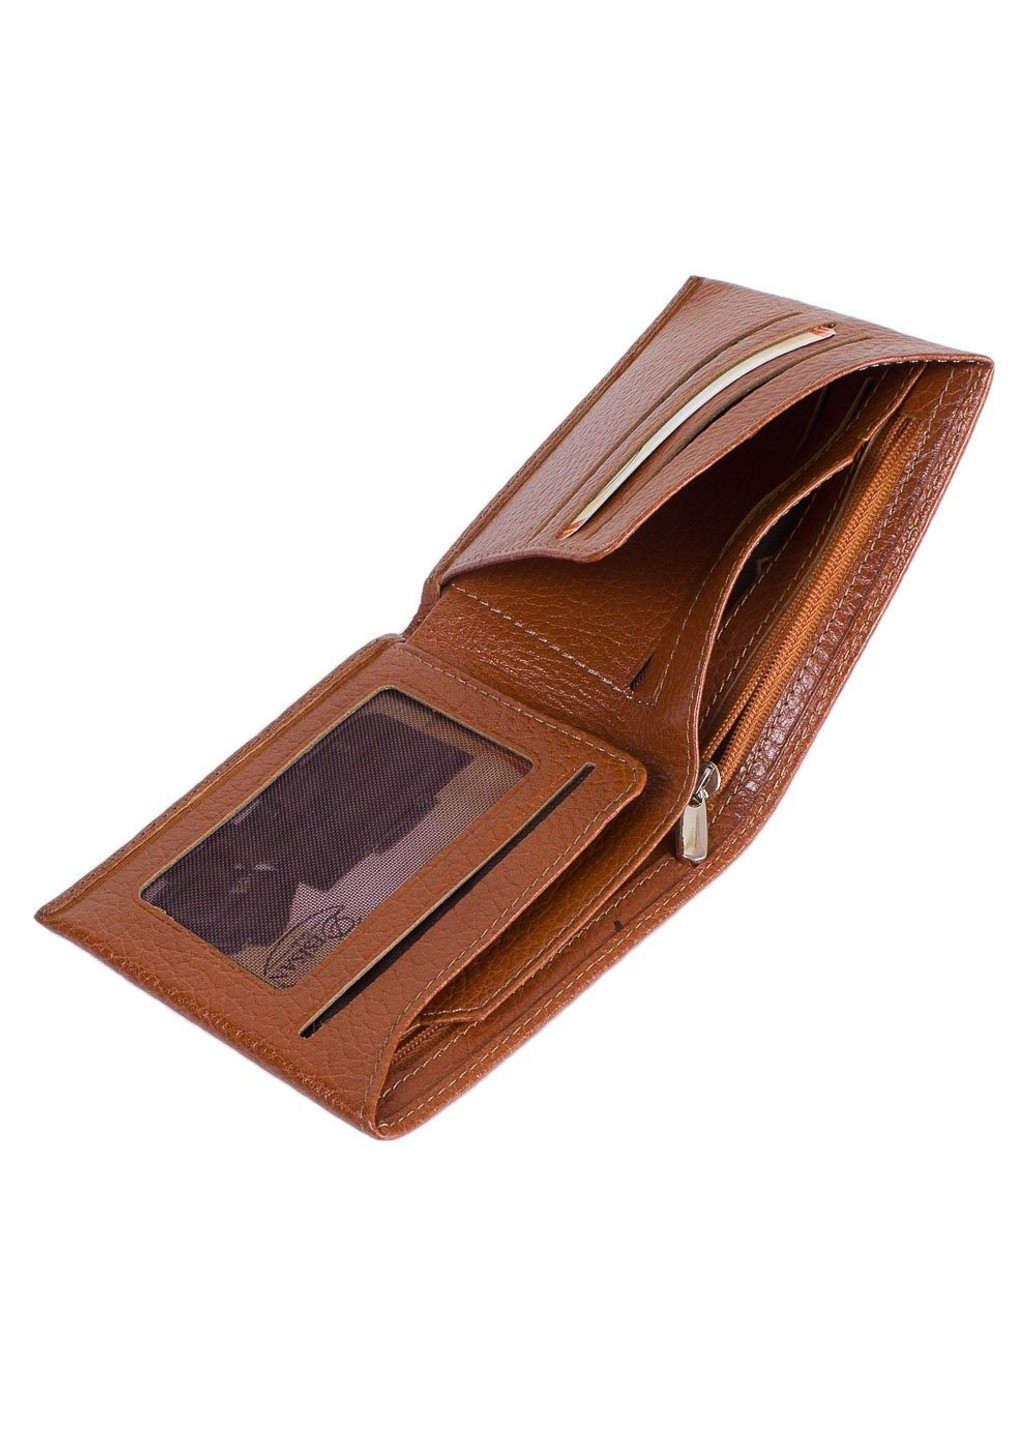 Чоловічий шкіряний коричневий гаманець SHI727-015-24FL Desisan (262976427)